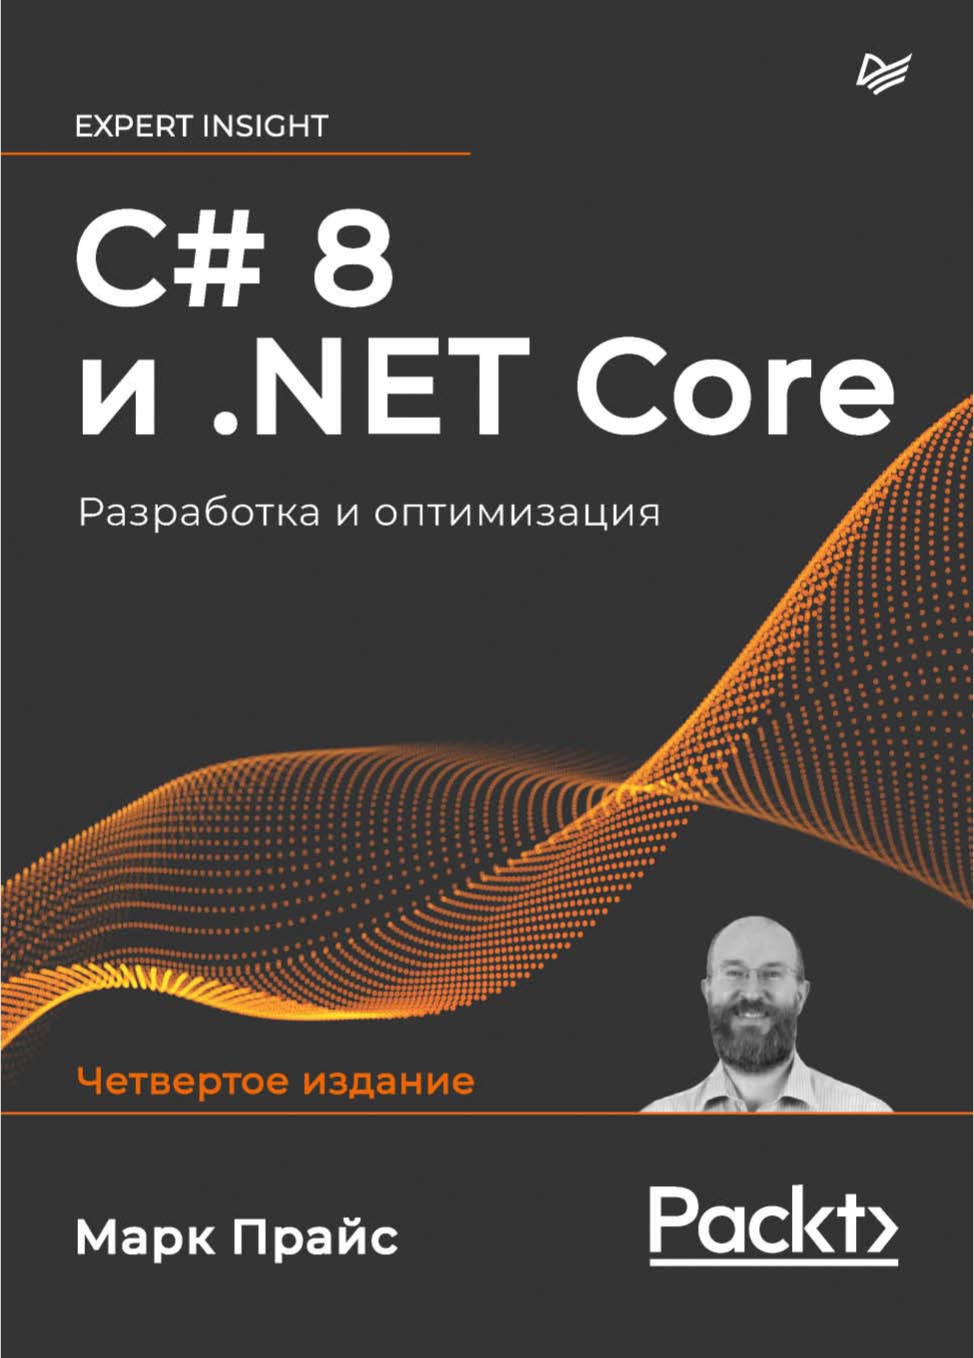 Книга Для профессионалов (Питер) C# 8 и .NET Core. Разработка и оптимизация созданная Марк Дж. Прайс, Анатолий Павлов может относится к жанру зарубежная компьютерная литература, программирование. Стоимость электронной книги C# 8 и .NET Core. Разработка и оптимизация с идентификатором 64825736 составляет 699.00 руб.